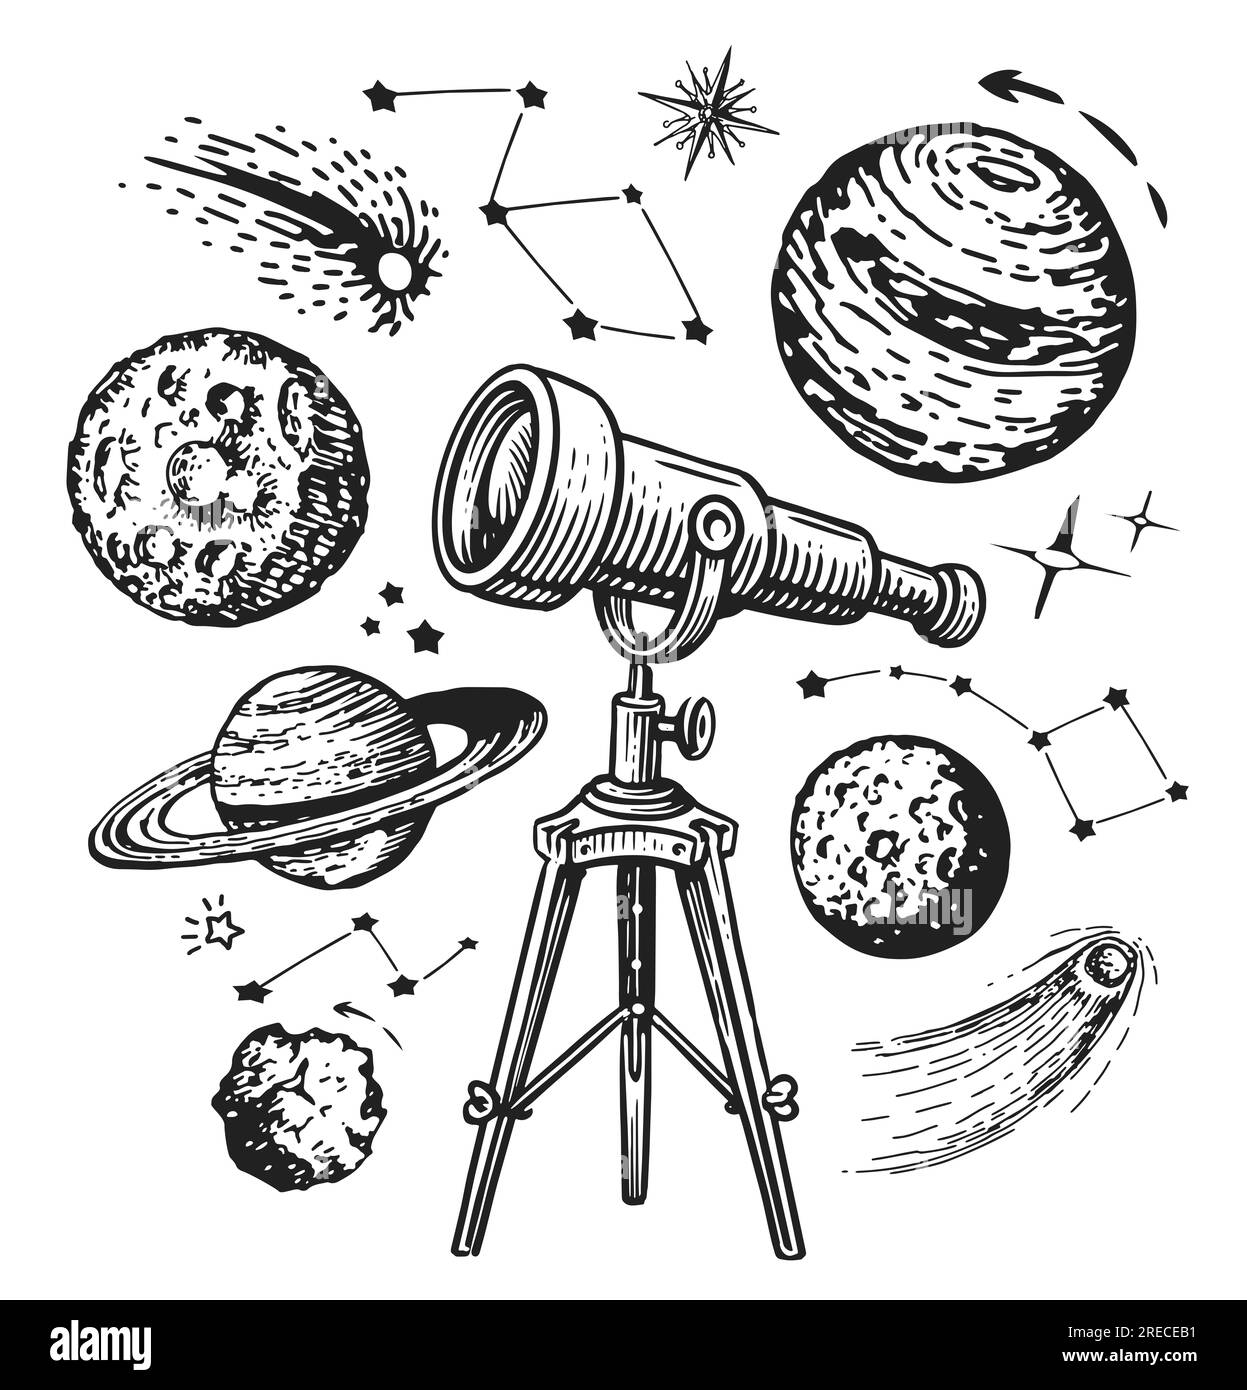 Das Retro-Teleskop sieht Planeten und Sterne an. Galaxie, Weltraumkonzept. Handgezeichnete Zeichnung in einem Vintage-Stil Stockfoto